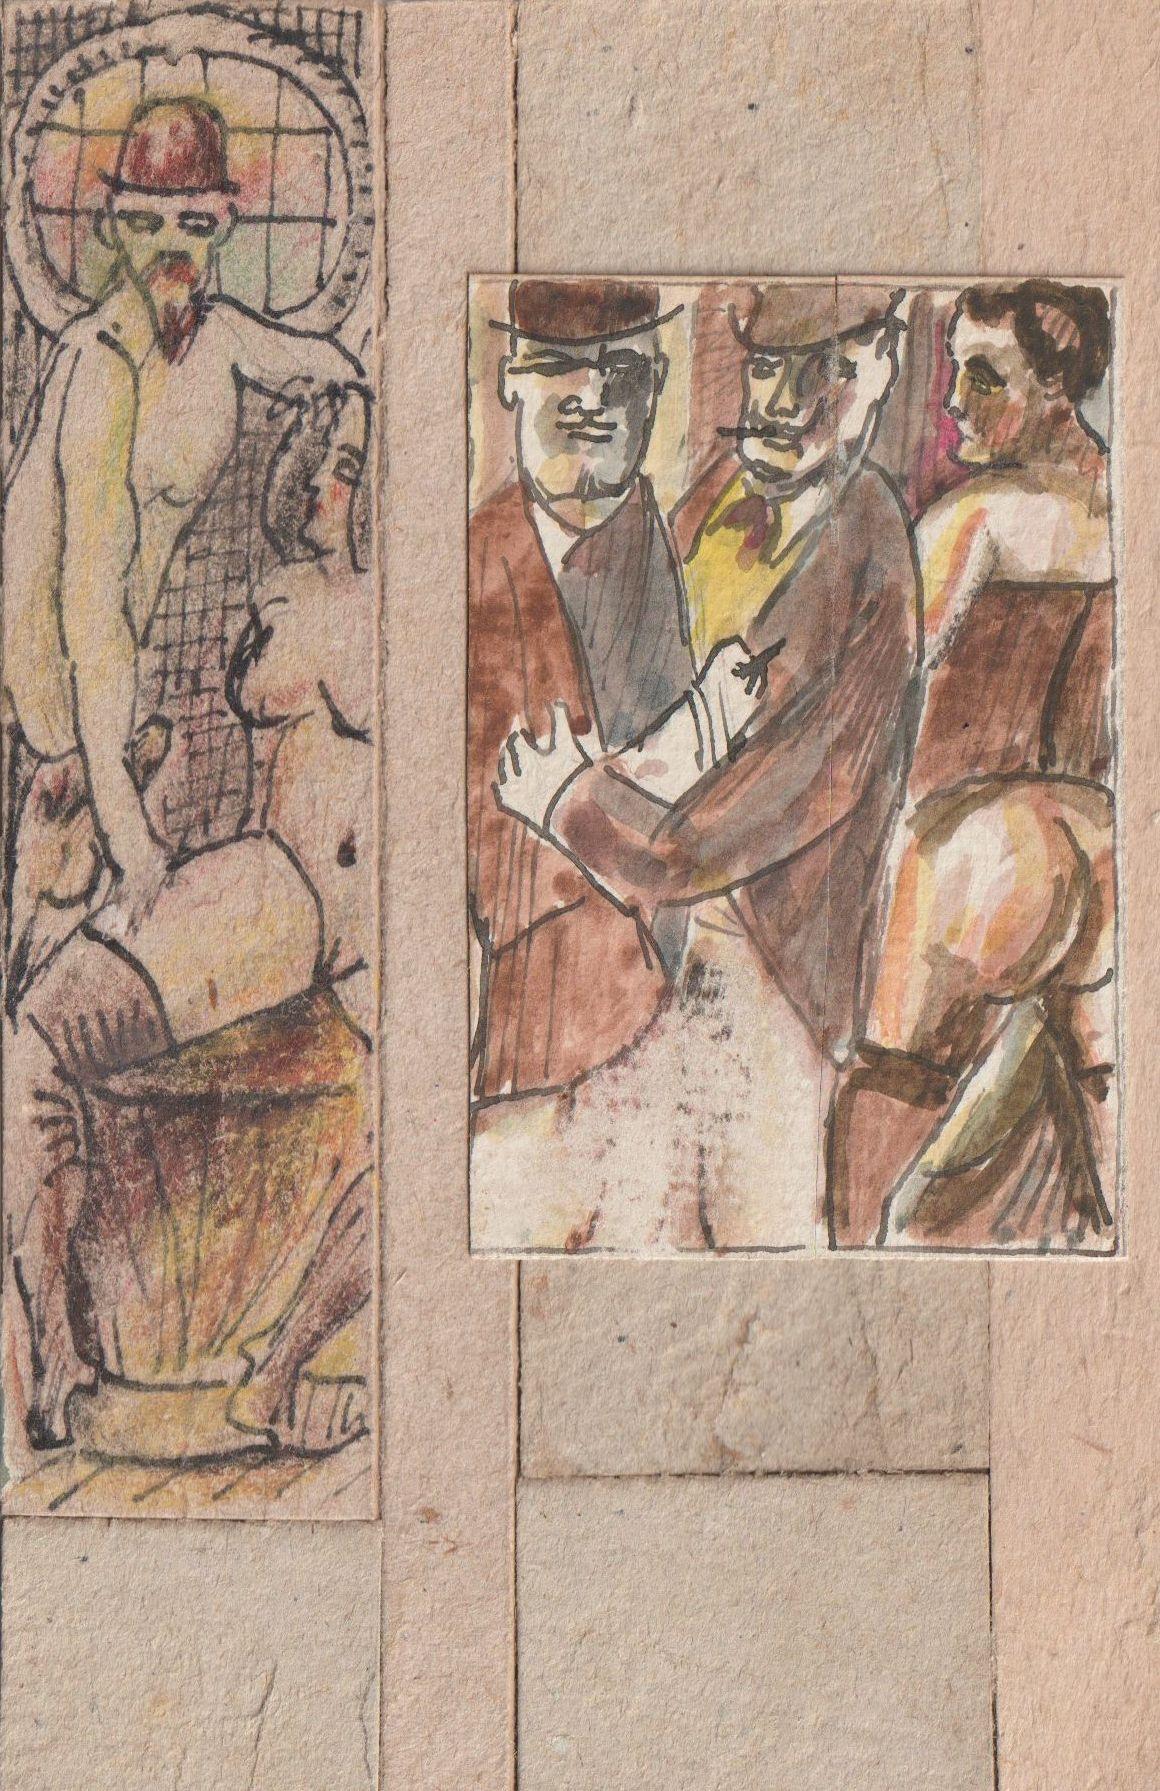 Adolfs Zardins Figurative Painting – Es handelt sich um 2 Stck., Papier, Karton, Mischtechnik, 8,3x5,5 cm, 12,8x3,2 cm 